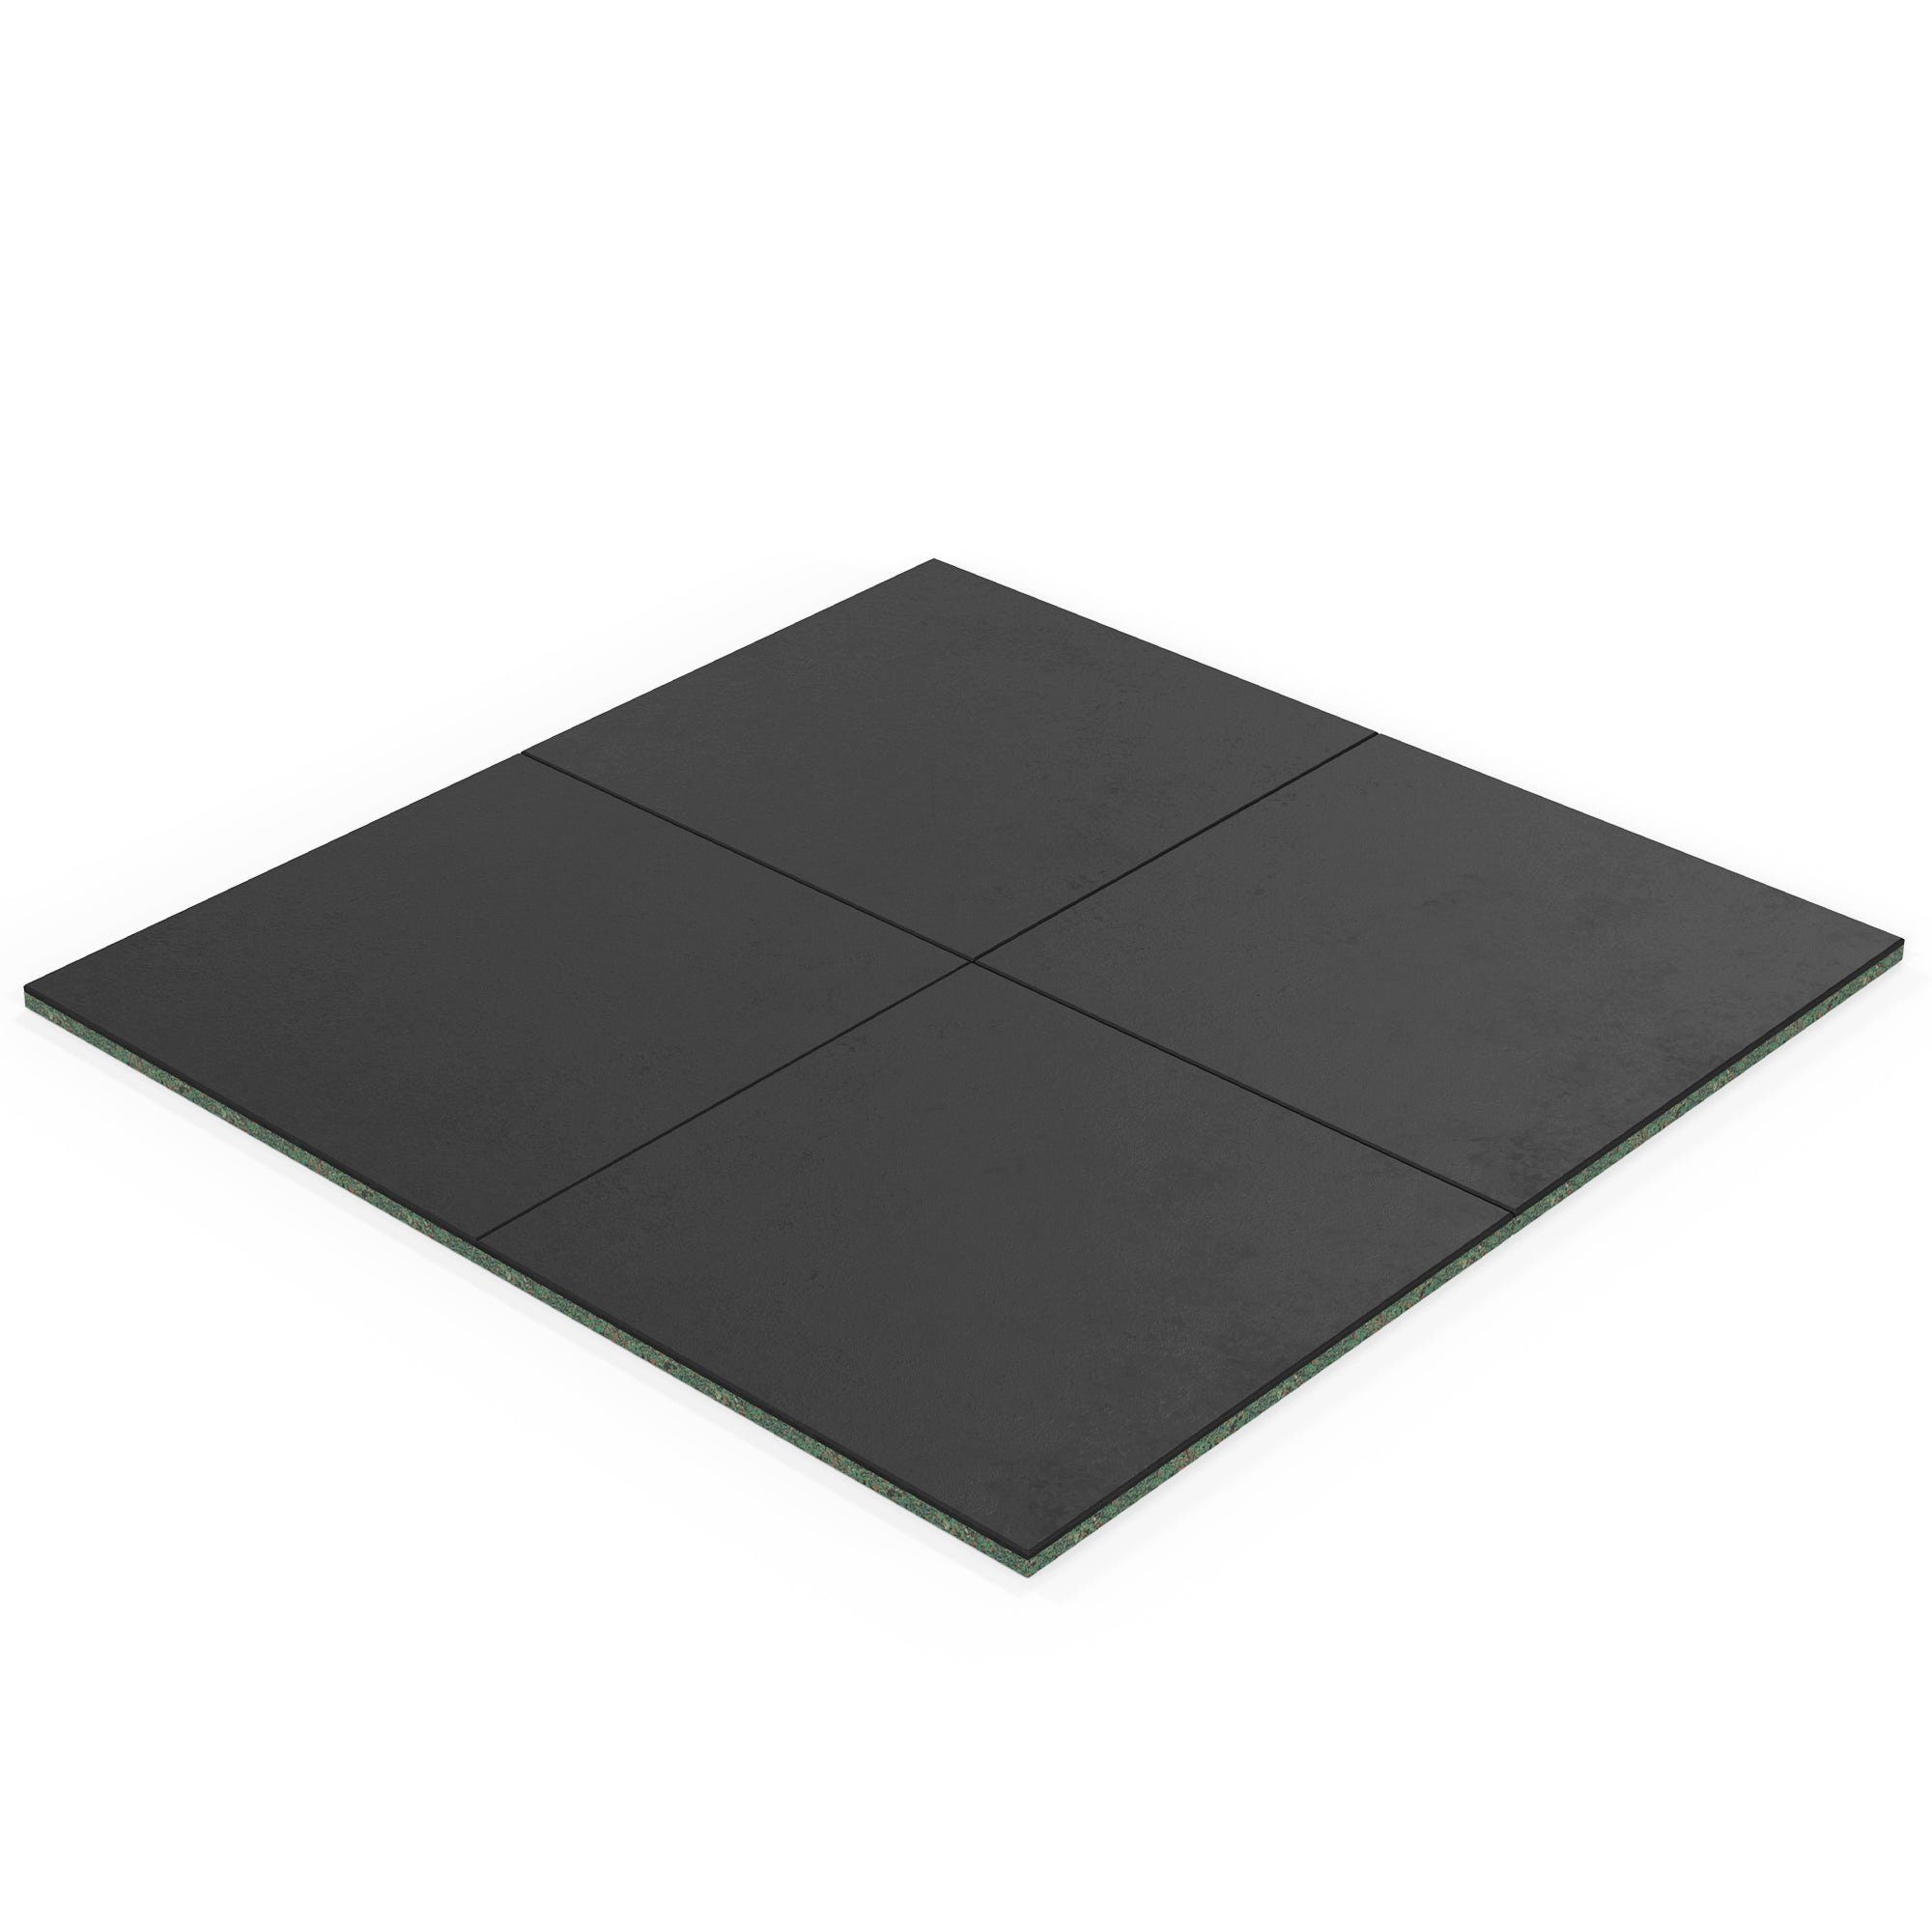 ATLETICA Bodenmatte 4m2 SolidProtect Bodenschutzmatten 20 mm, Keltan EPDM Material